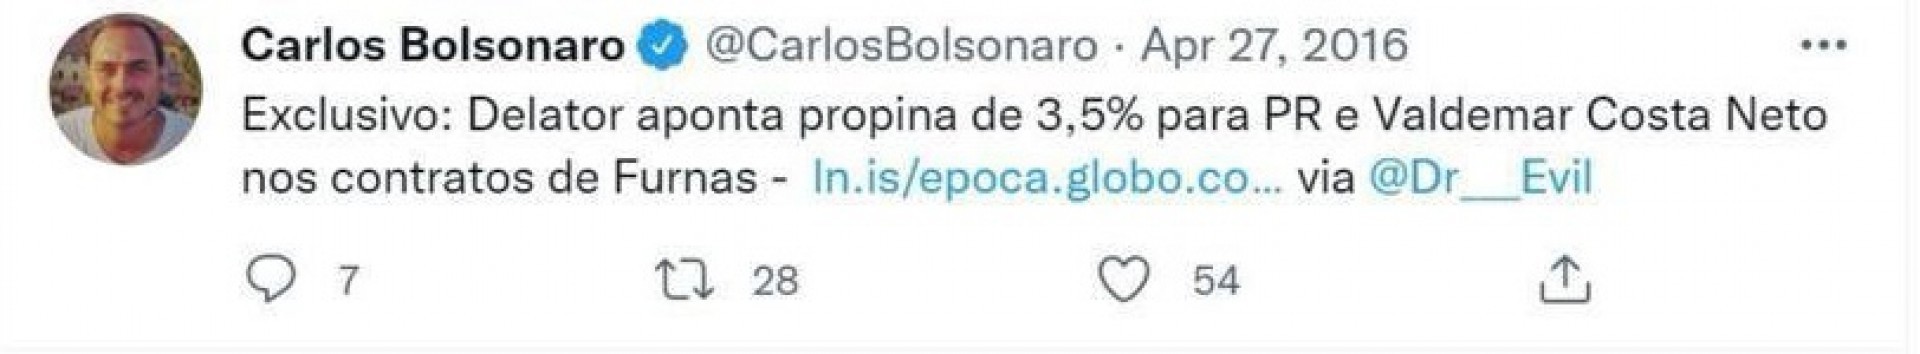 Tuíte excluído por Carlos Bolsonaro, com compartilhamento de reportagem da revista Época.